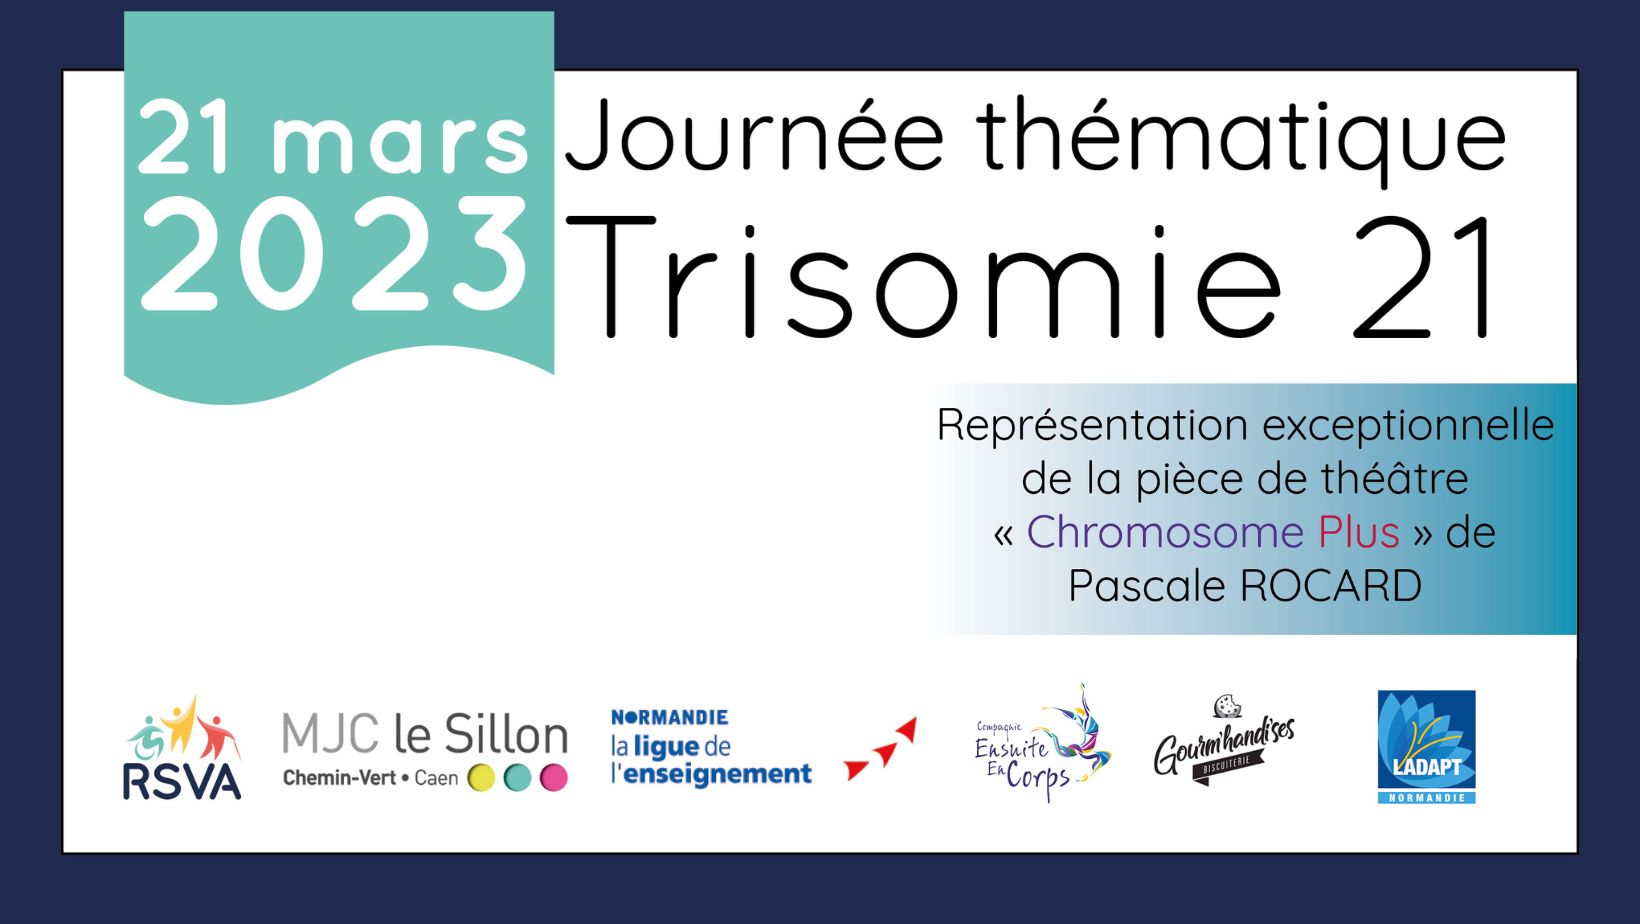 Journée mondiale de la Trisomie 21 - Spectacle de Pascale Rocard, 21 mars